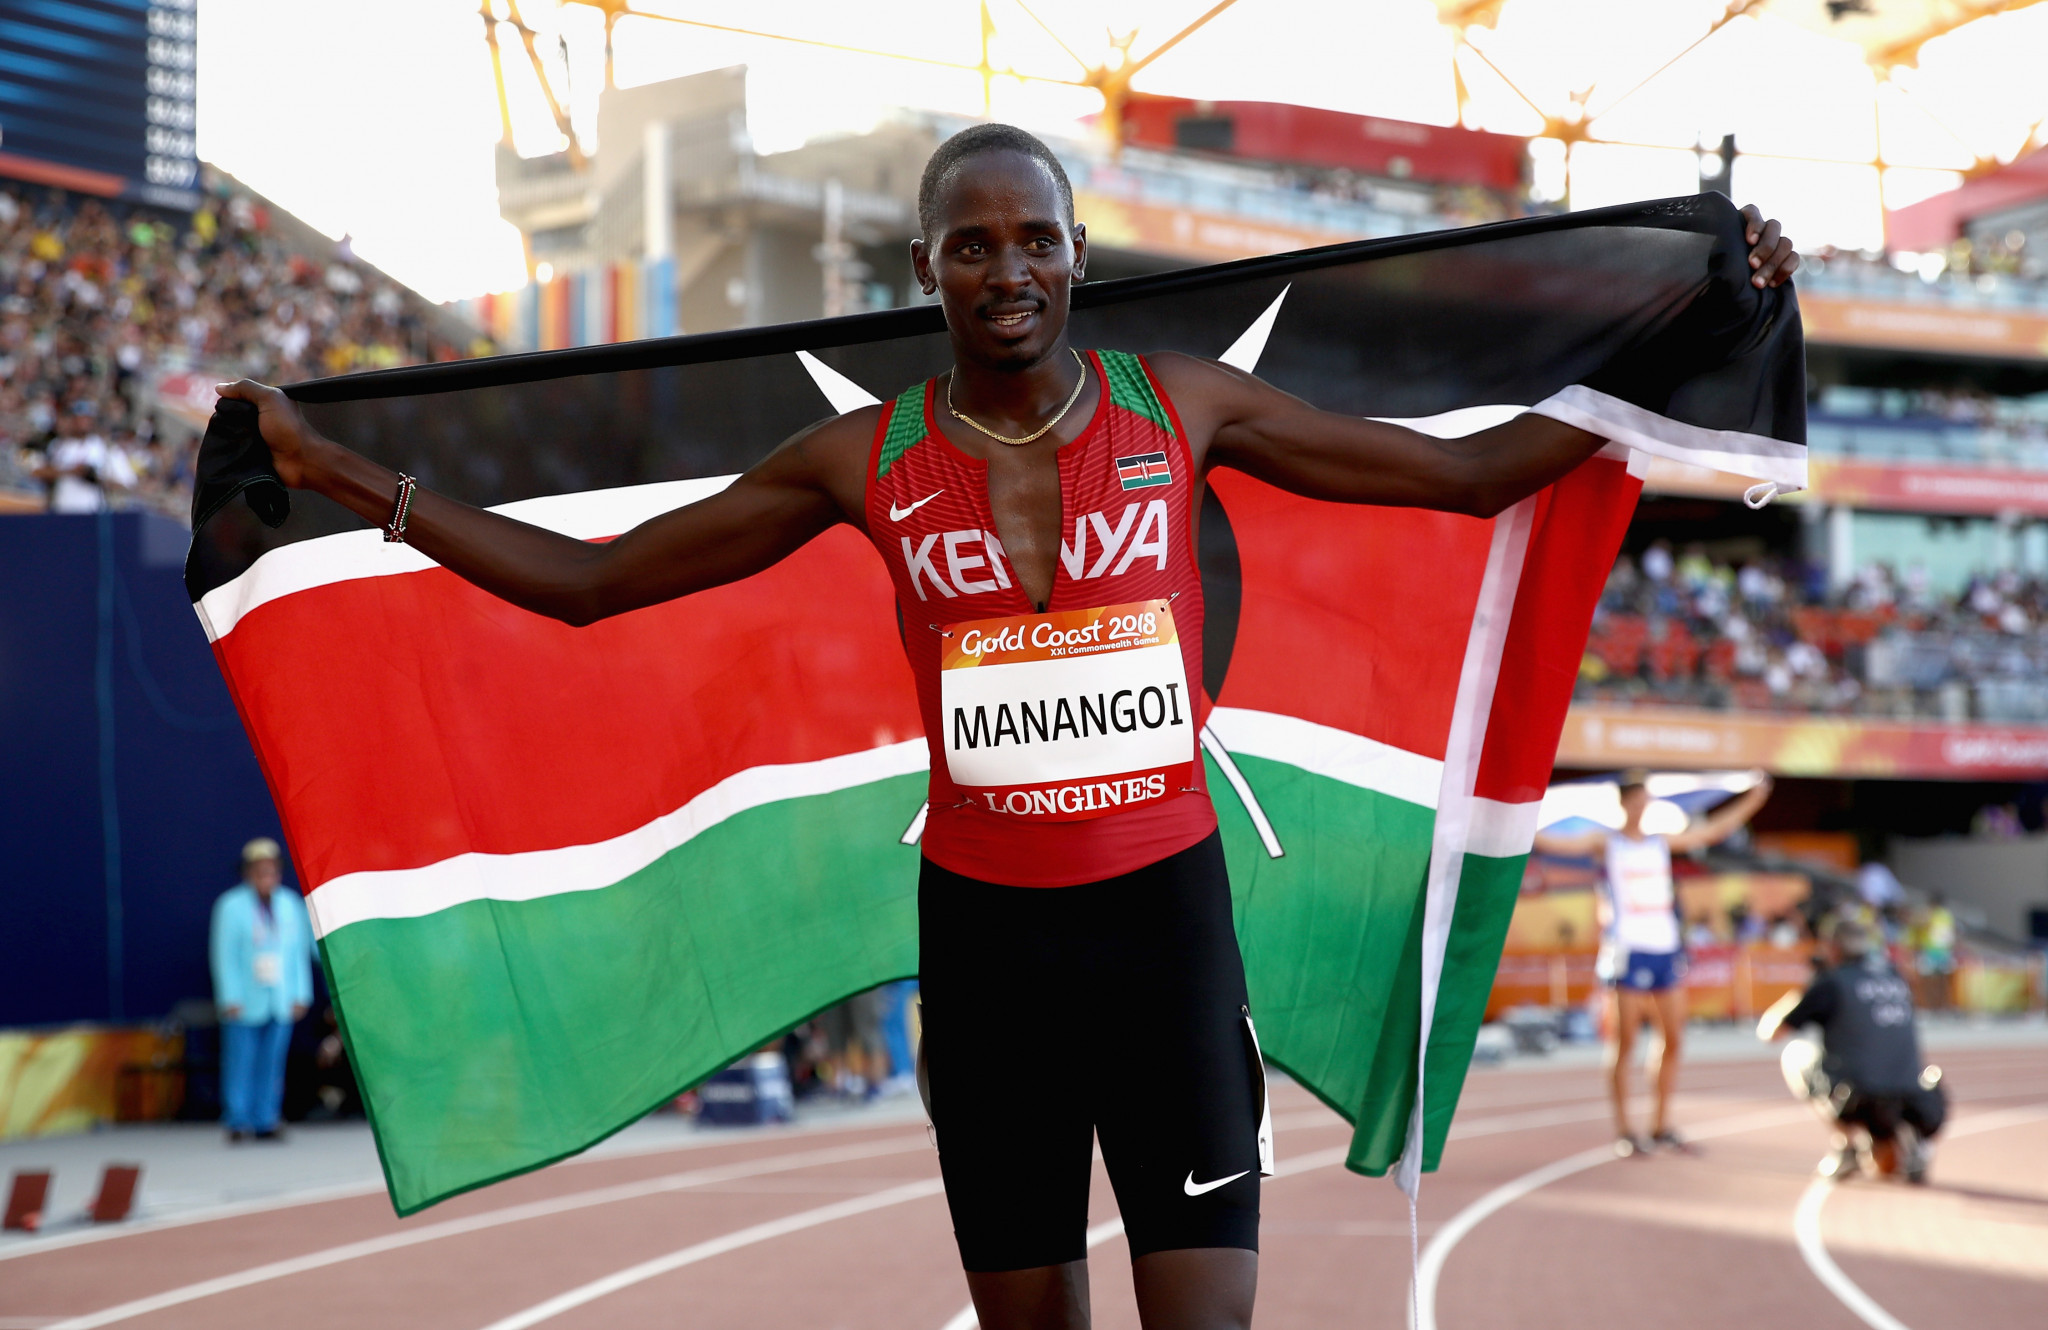 AIU announces sanctions against four Kenyans including ex-1,500m world champion Manangoi